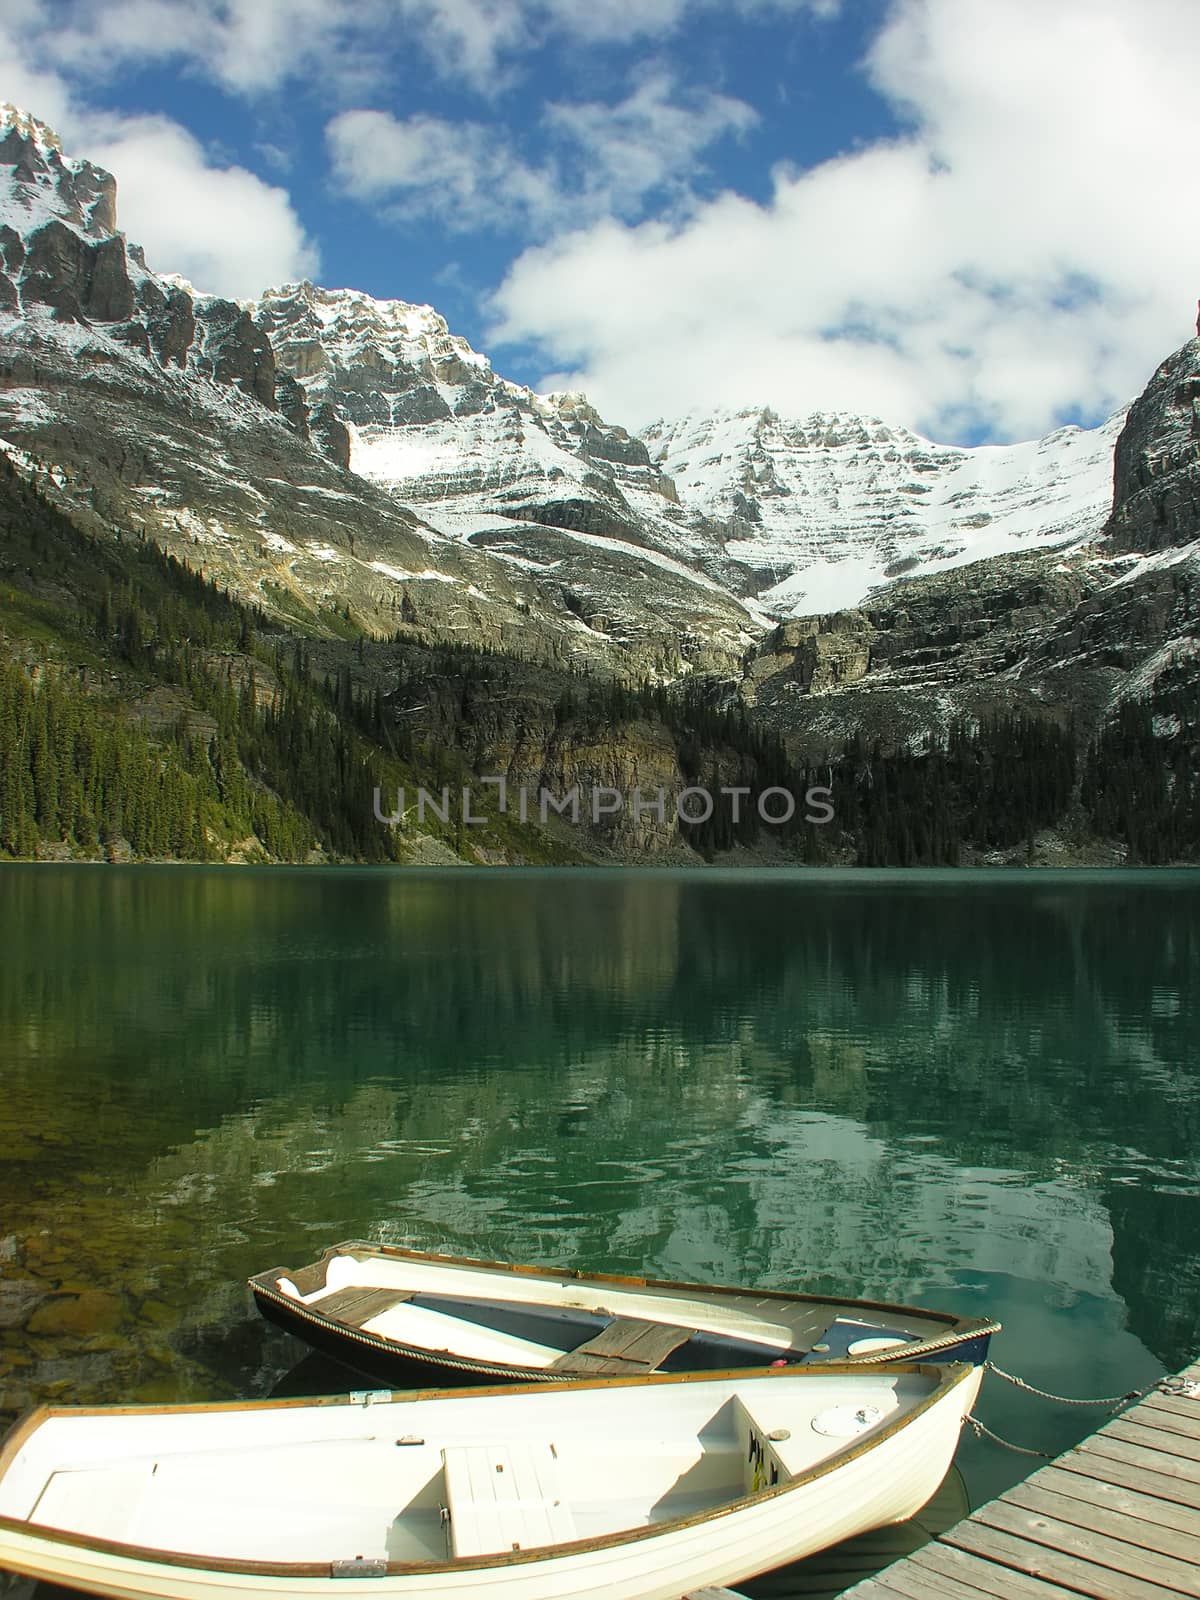 Wooden boats at Lake O'Hara, Yoho National Park, British Columbia, Canada